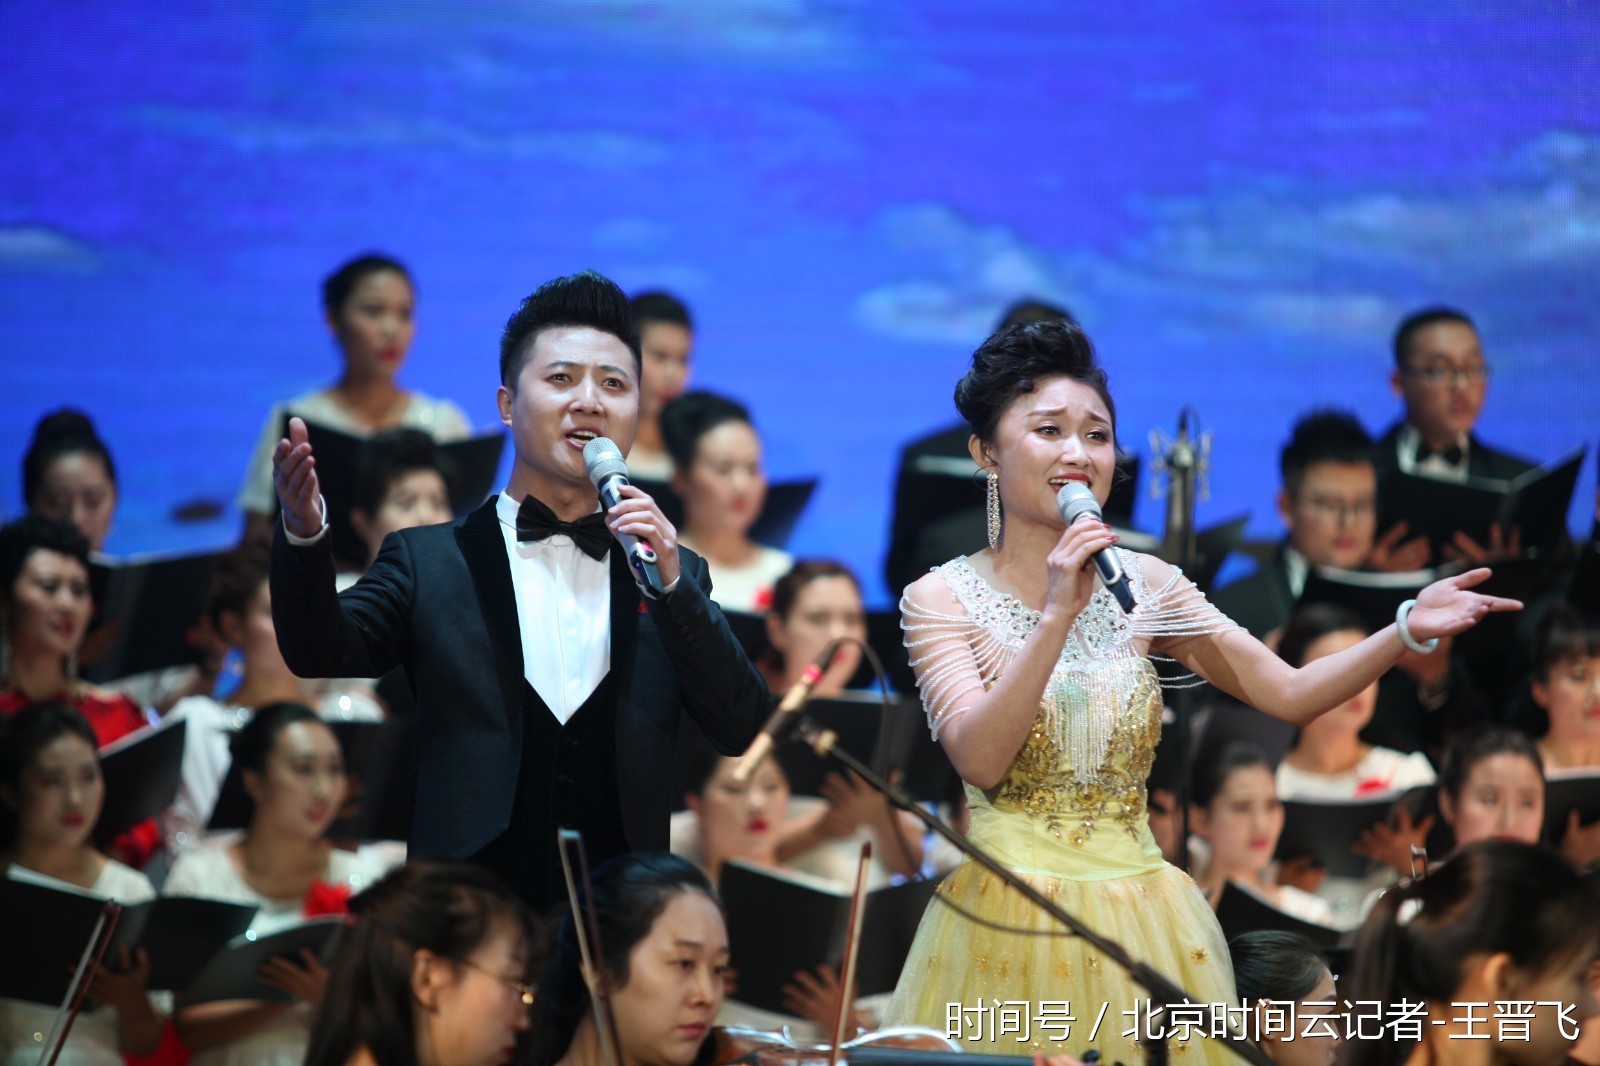 朔州市举办放歌新时代2018新年音乐会(完整